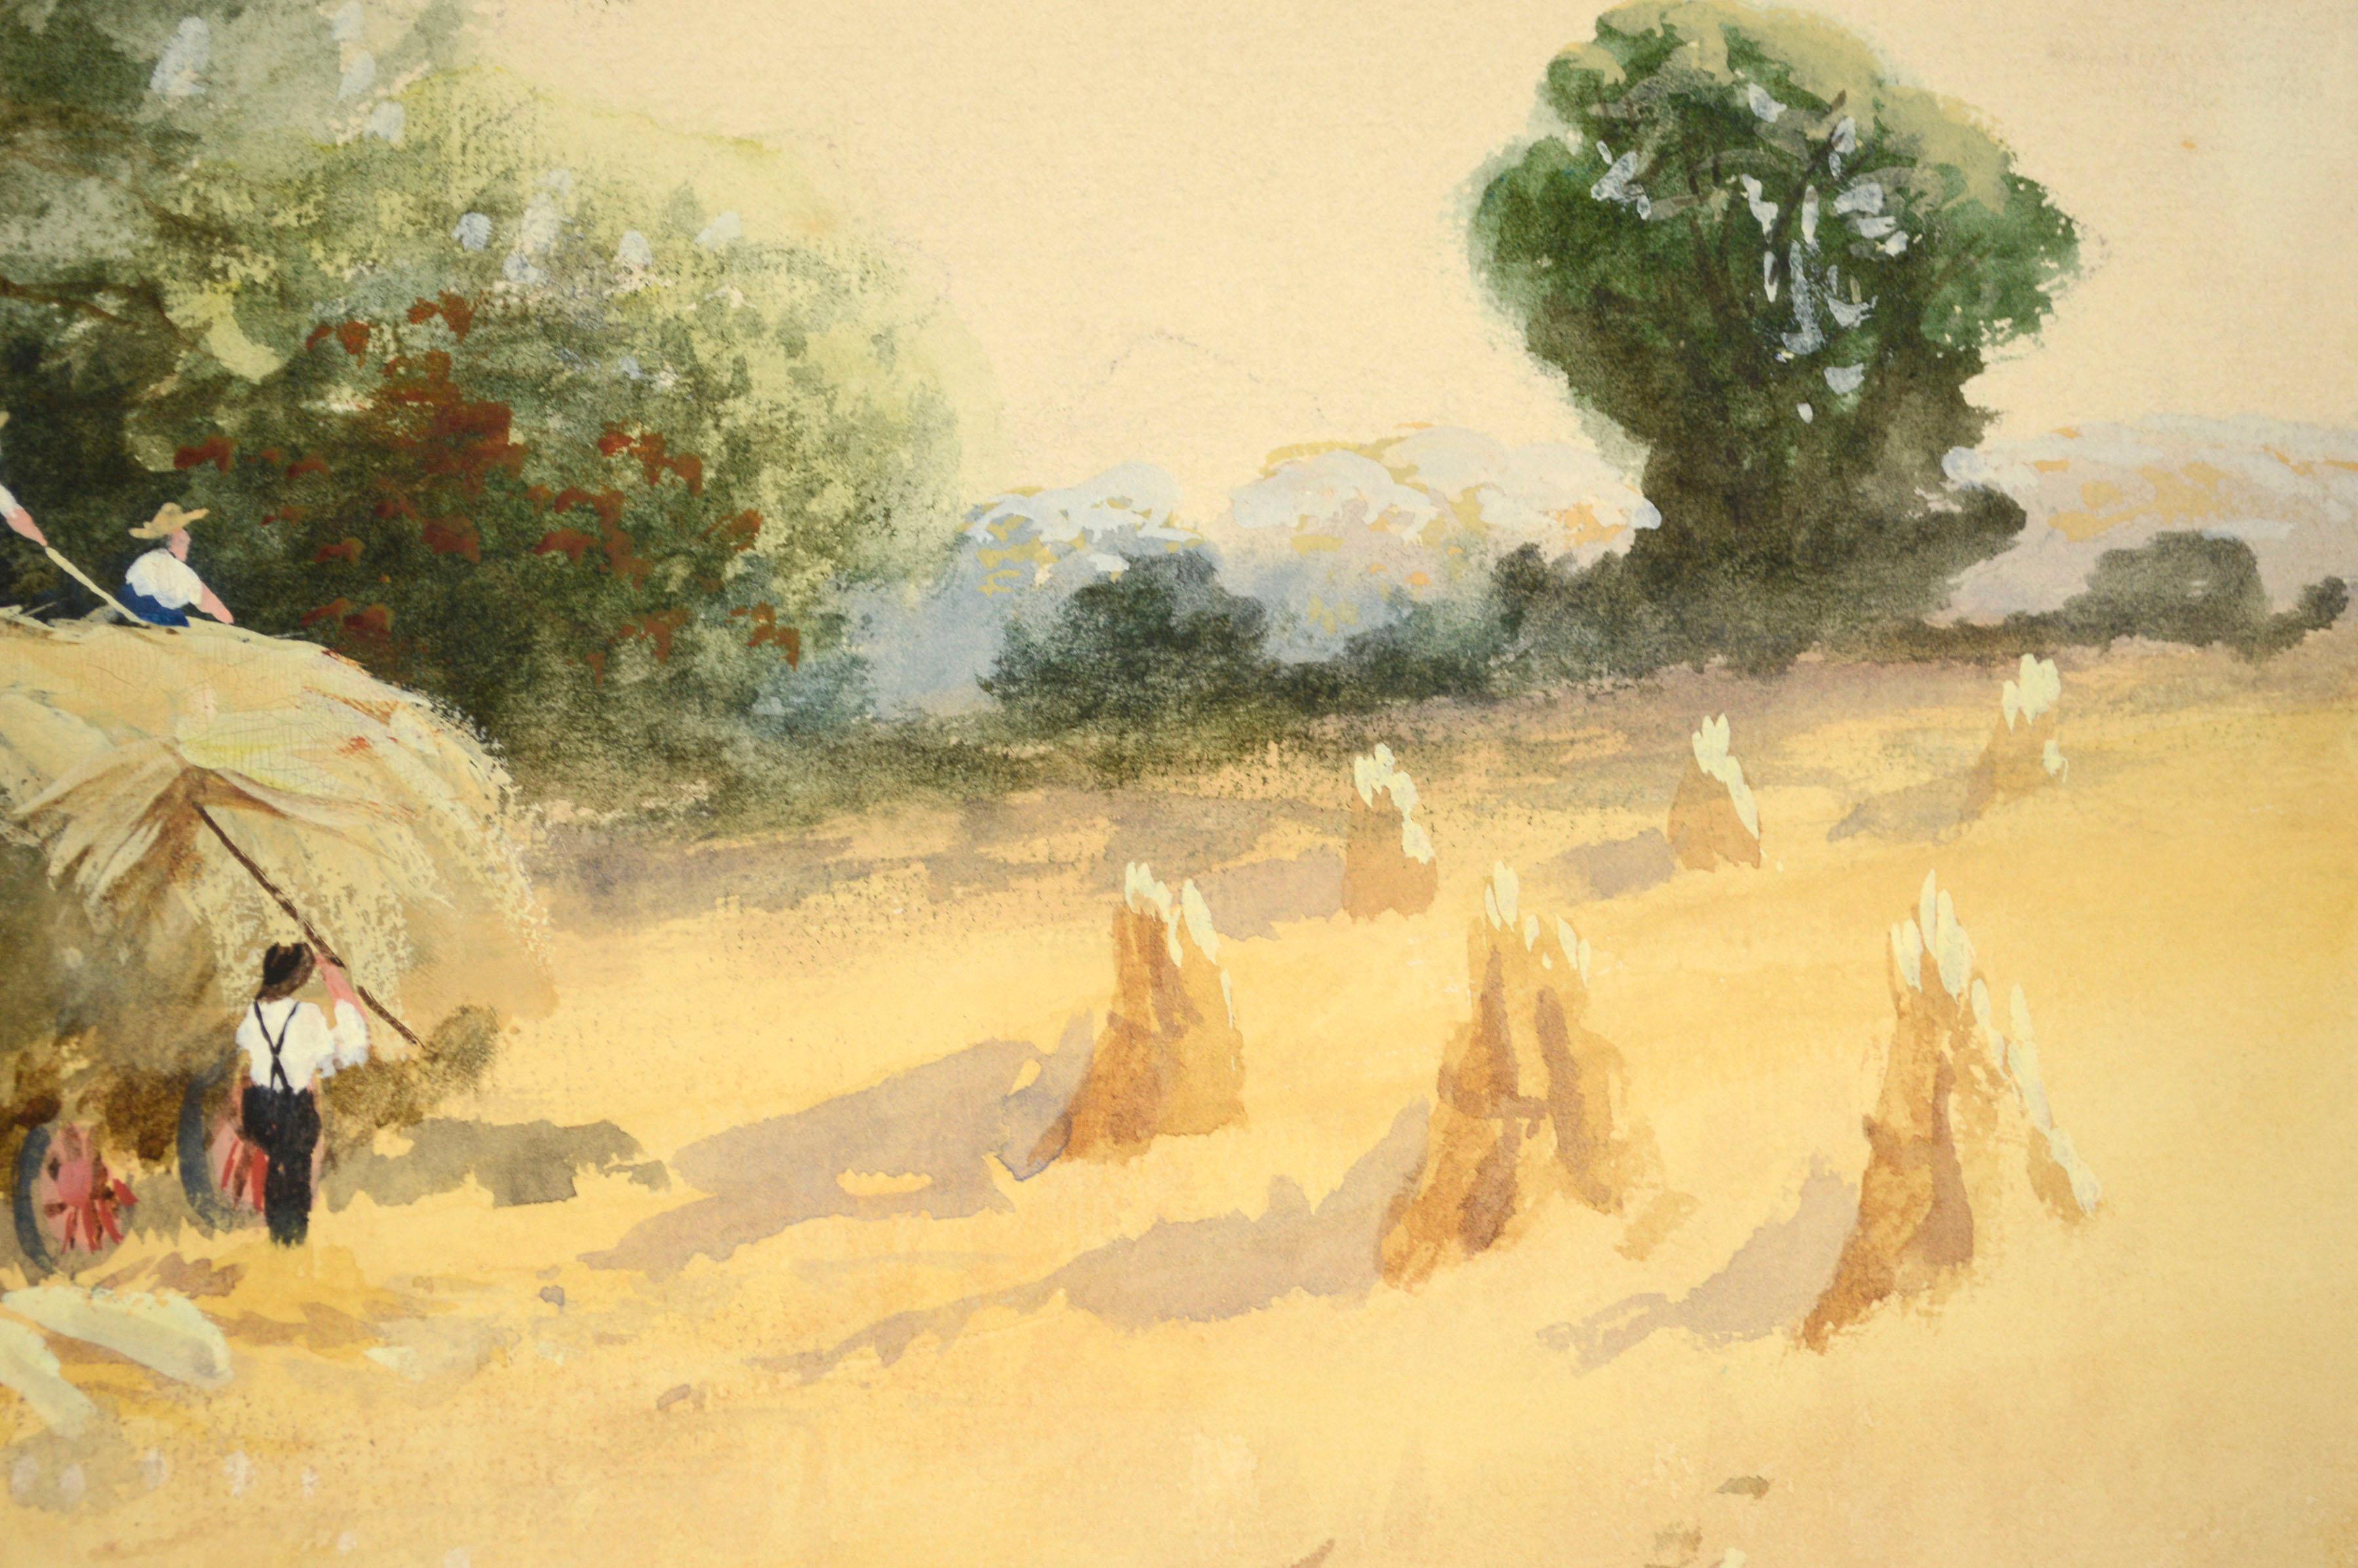 Paysage figuratif italien du début du XXe siècle représentant une scène traditionnelle de récolte dans un champ de blé, par S. Frosini (italien, XXe siècle). Ce paysage figuratif à la gouache représente avec force détails plusieurs petits